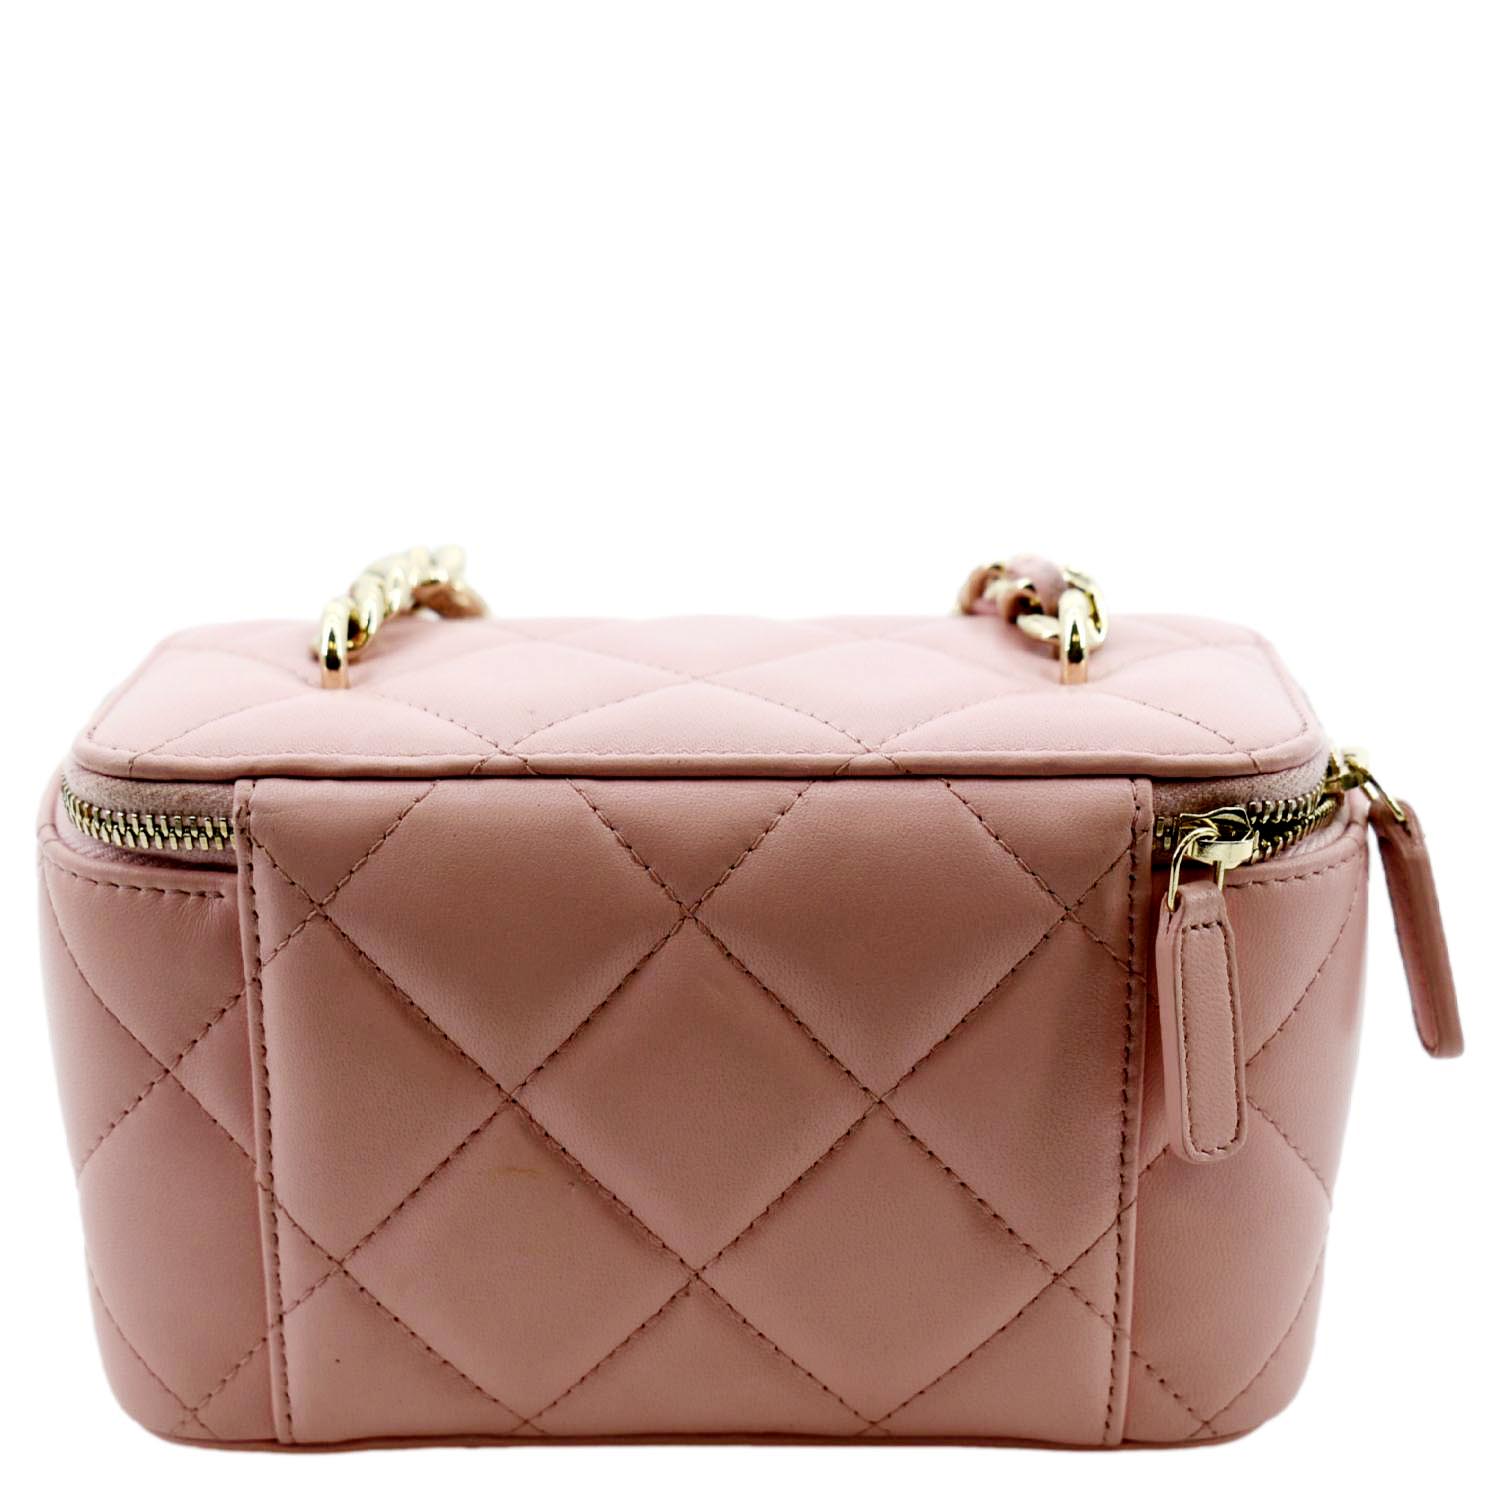 Chanel Resin Elegant Quilted Leather Shoulder Bag